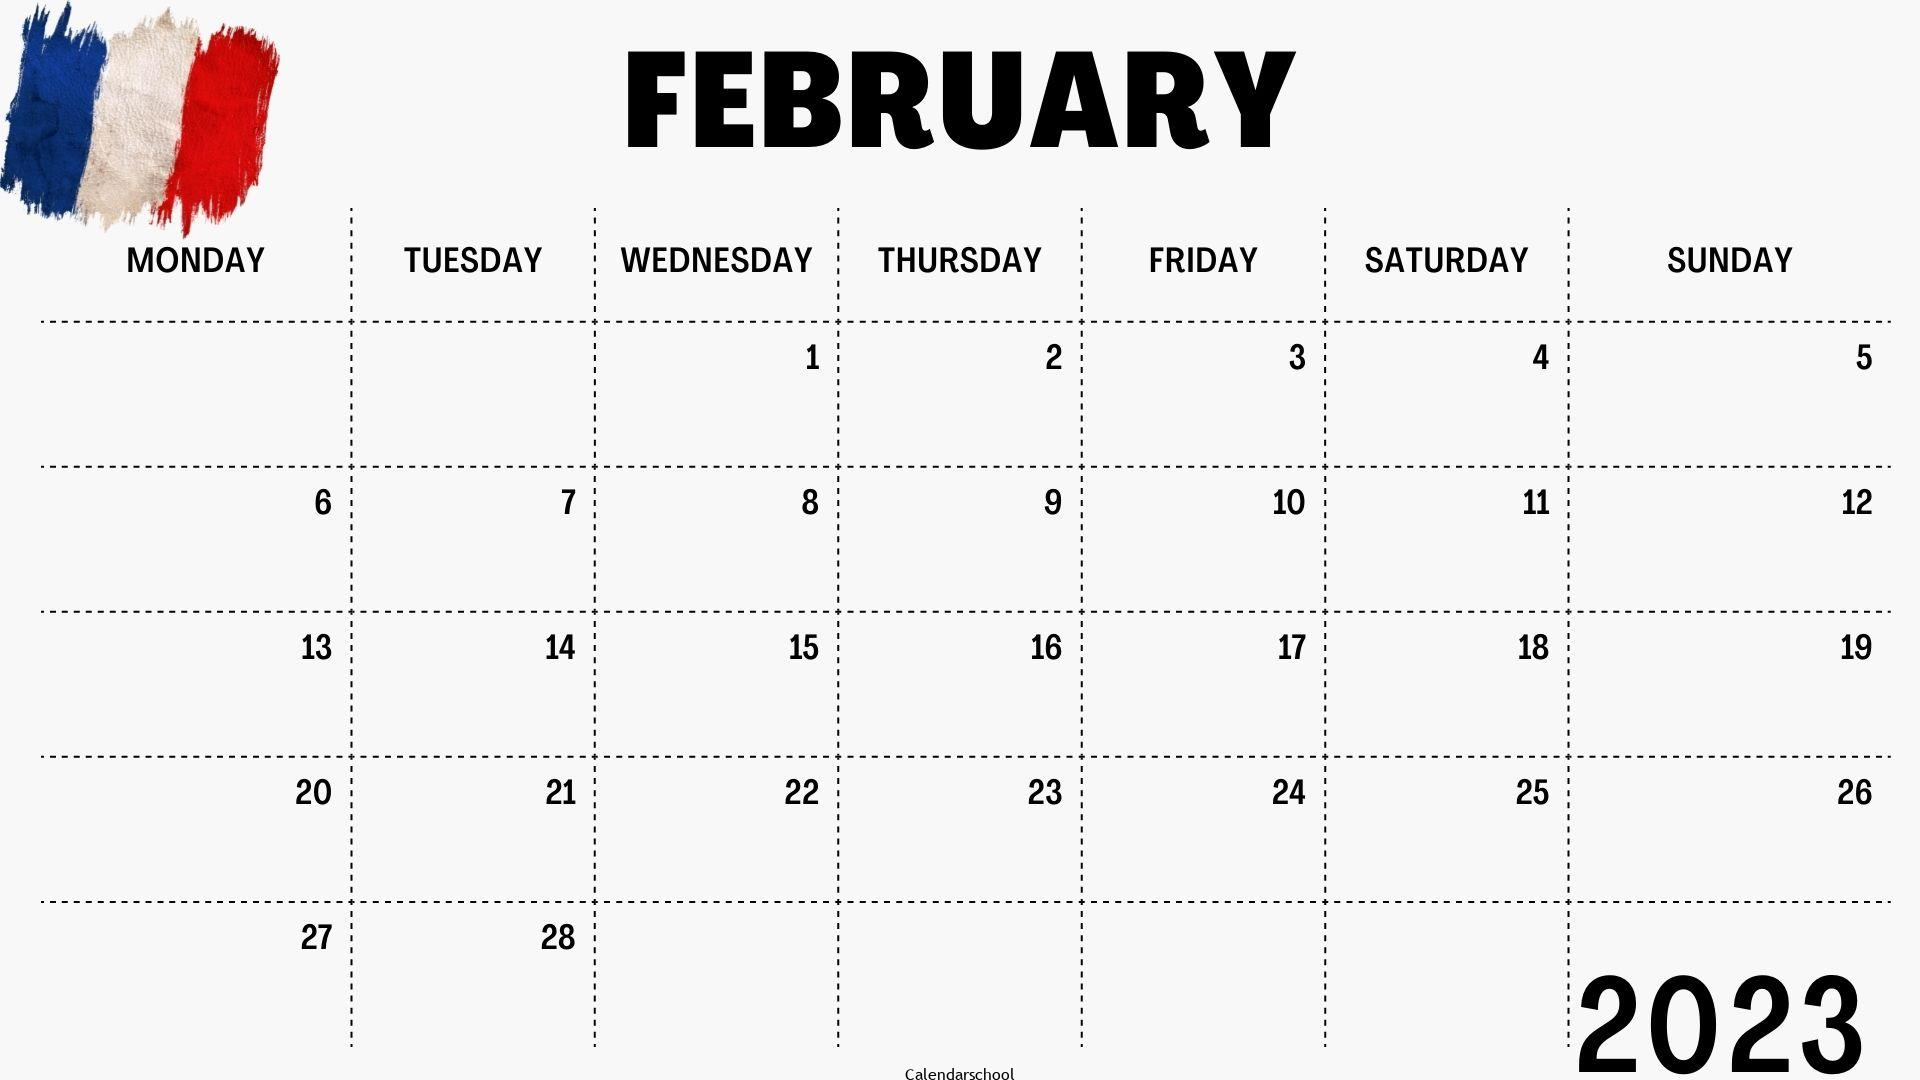 February 2023 Calendar with Holidays France